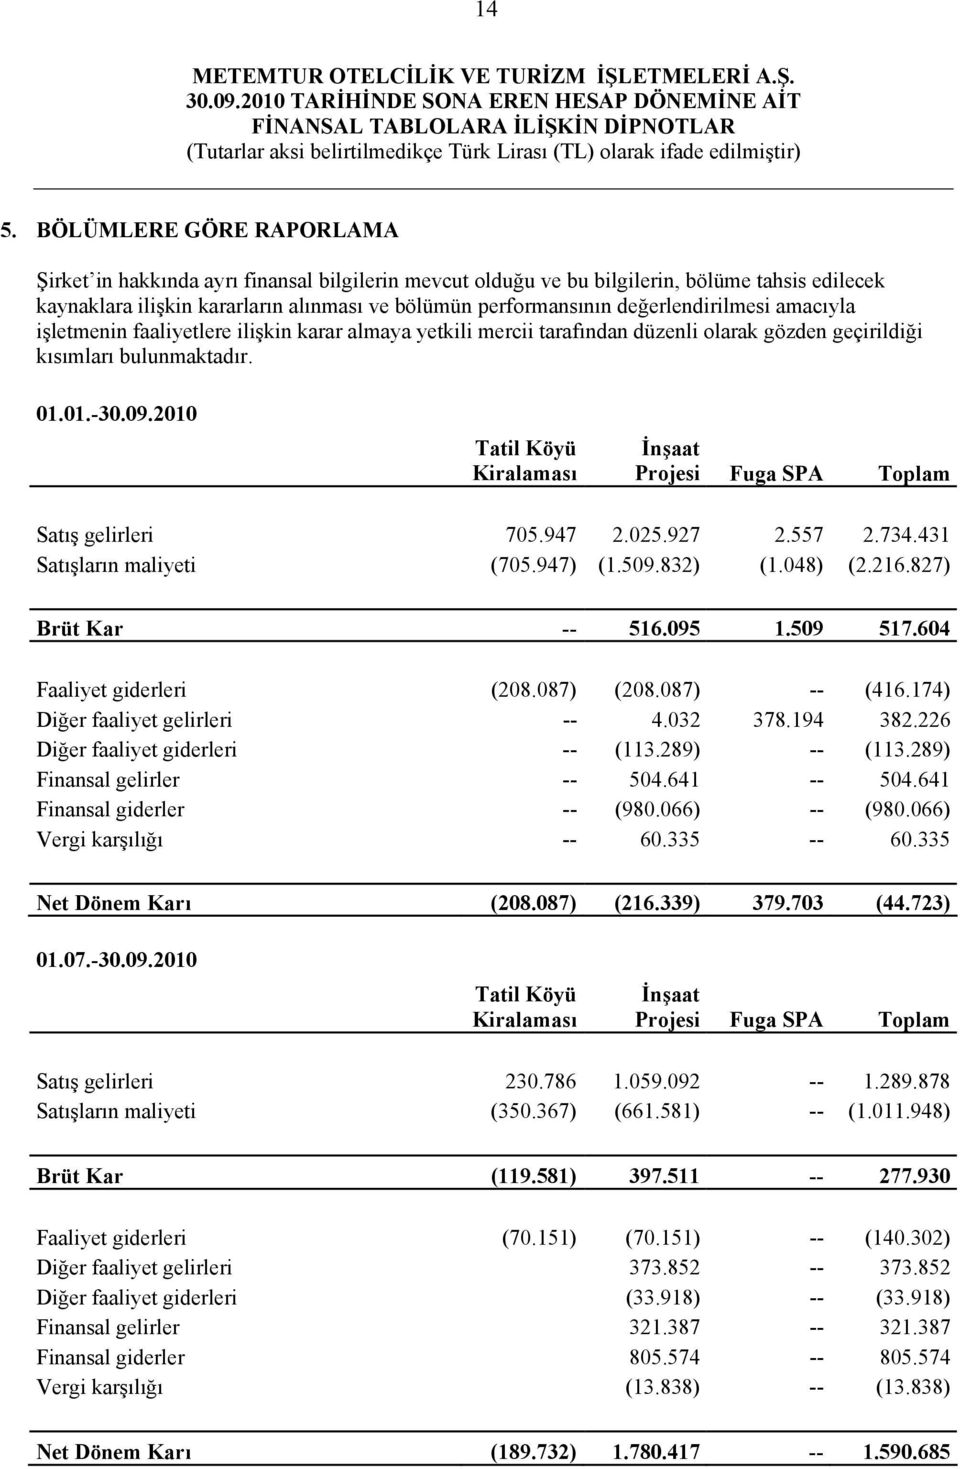 2010 Tatil Köyü Kiralaması İnşaat Projesi Fuga SPA Toplam Satış gelirleri 705.947 2.025.927 2.557 2.734.431 Satışların maliyeti (705.947) (1.509.832) (1.048) (2.216.827) Brüt Kar -- 516.095 1.509 517.